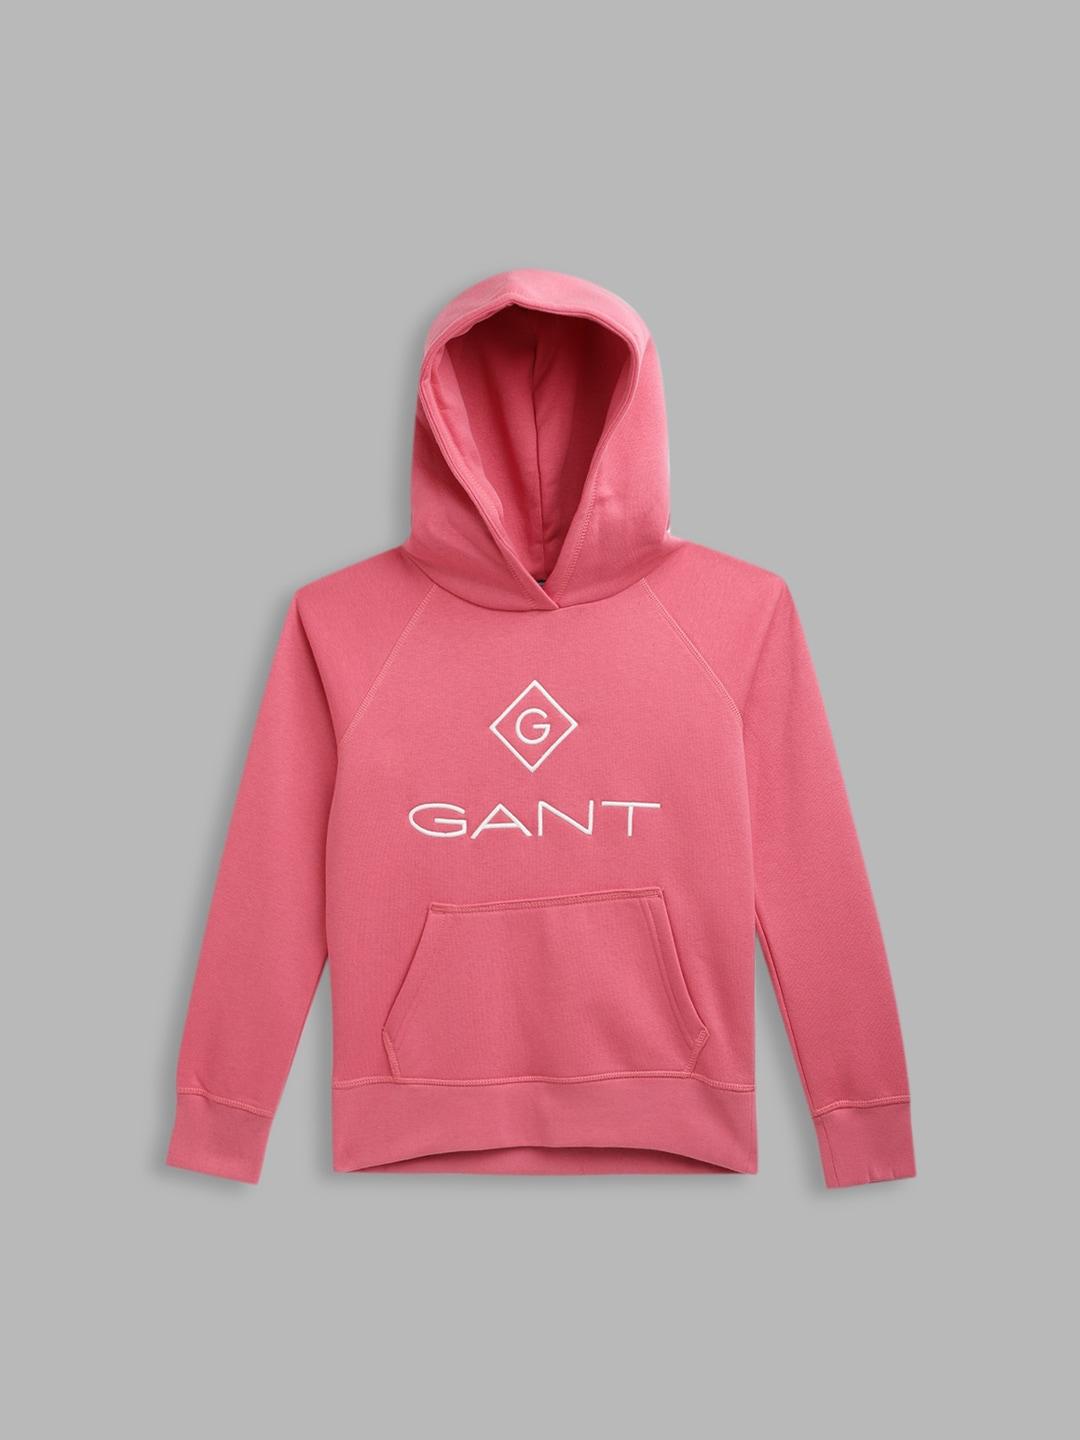 GANT Boys Pink Printed Hooded Sweatshirt